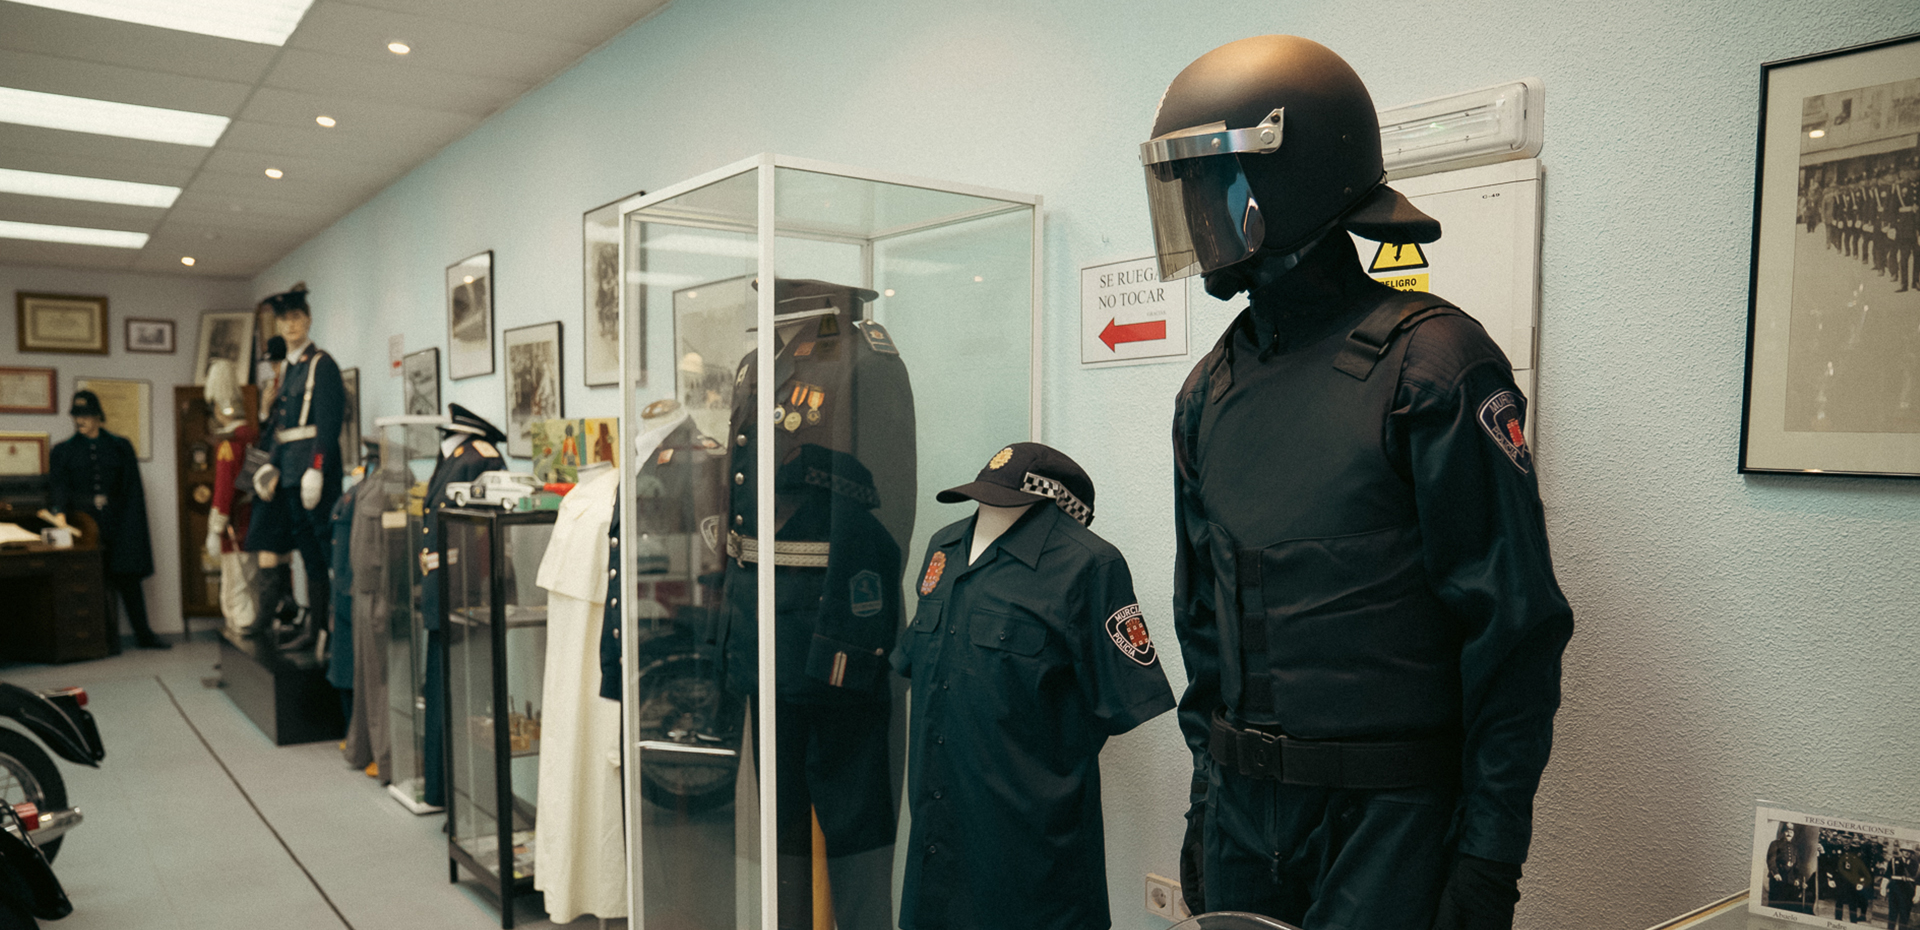 Expositores y maniquí del museo de la policía local